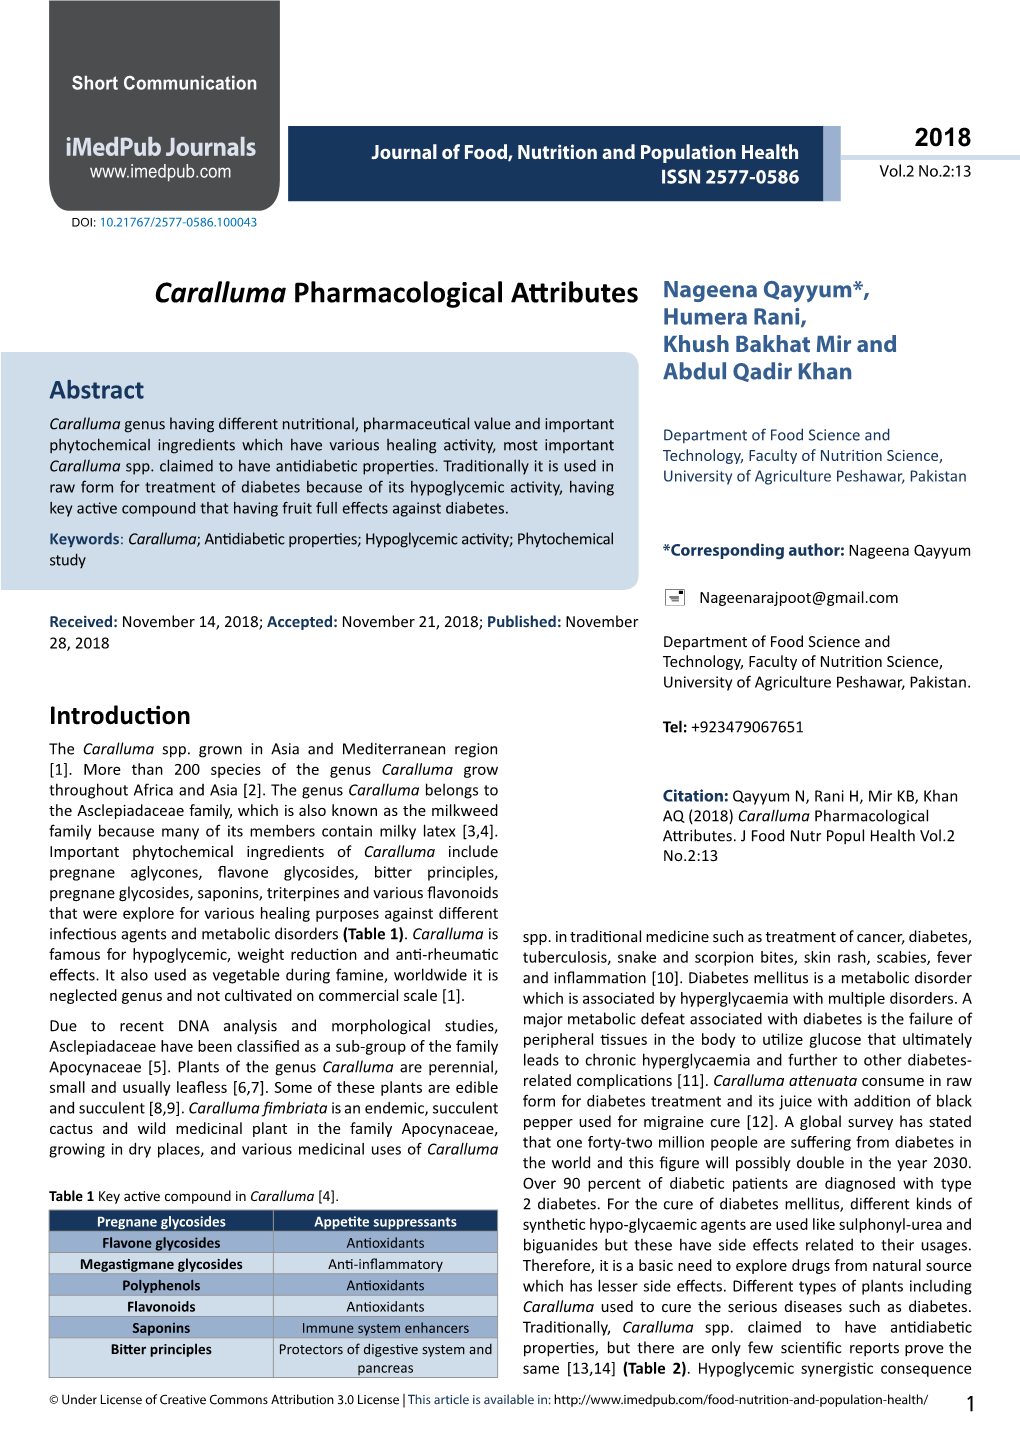 Caralluma Pharmacological Attributes